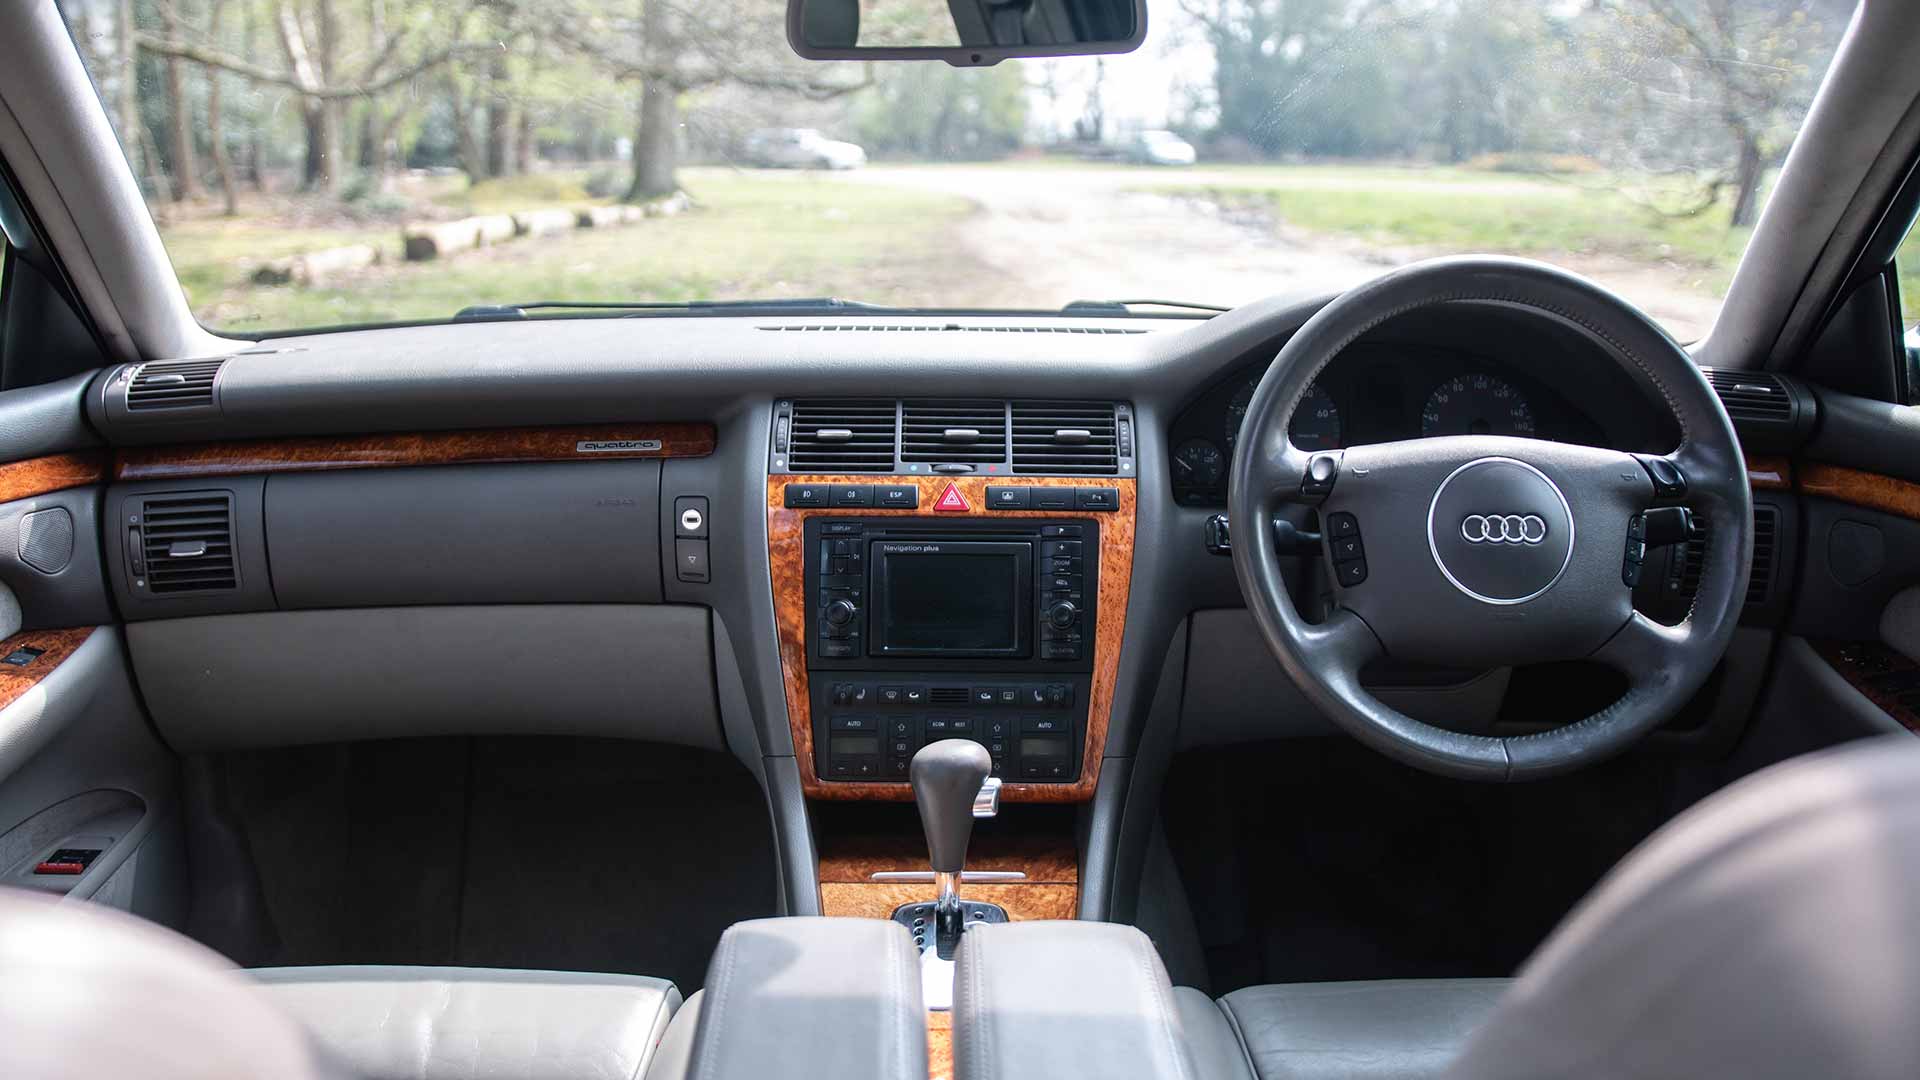 Audi long-term review